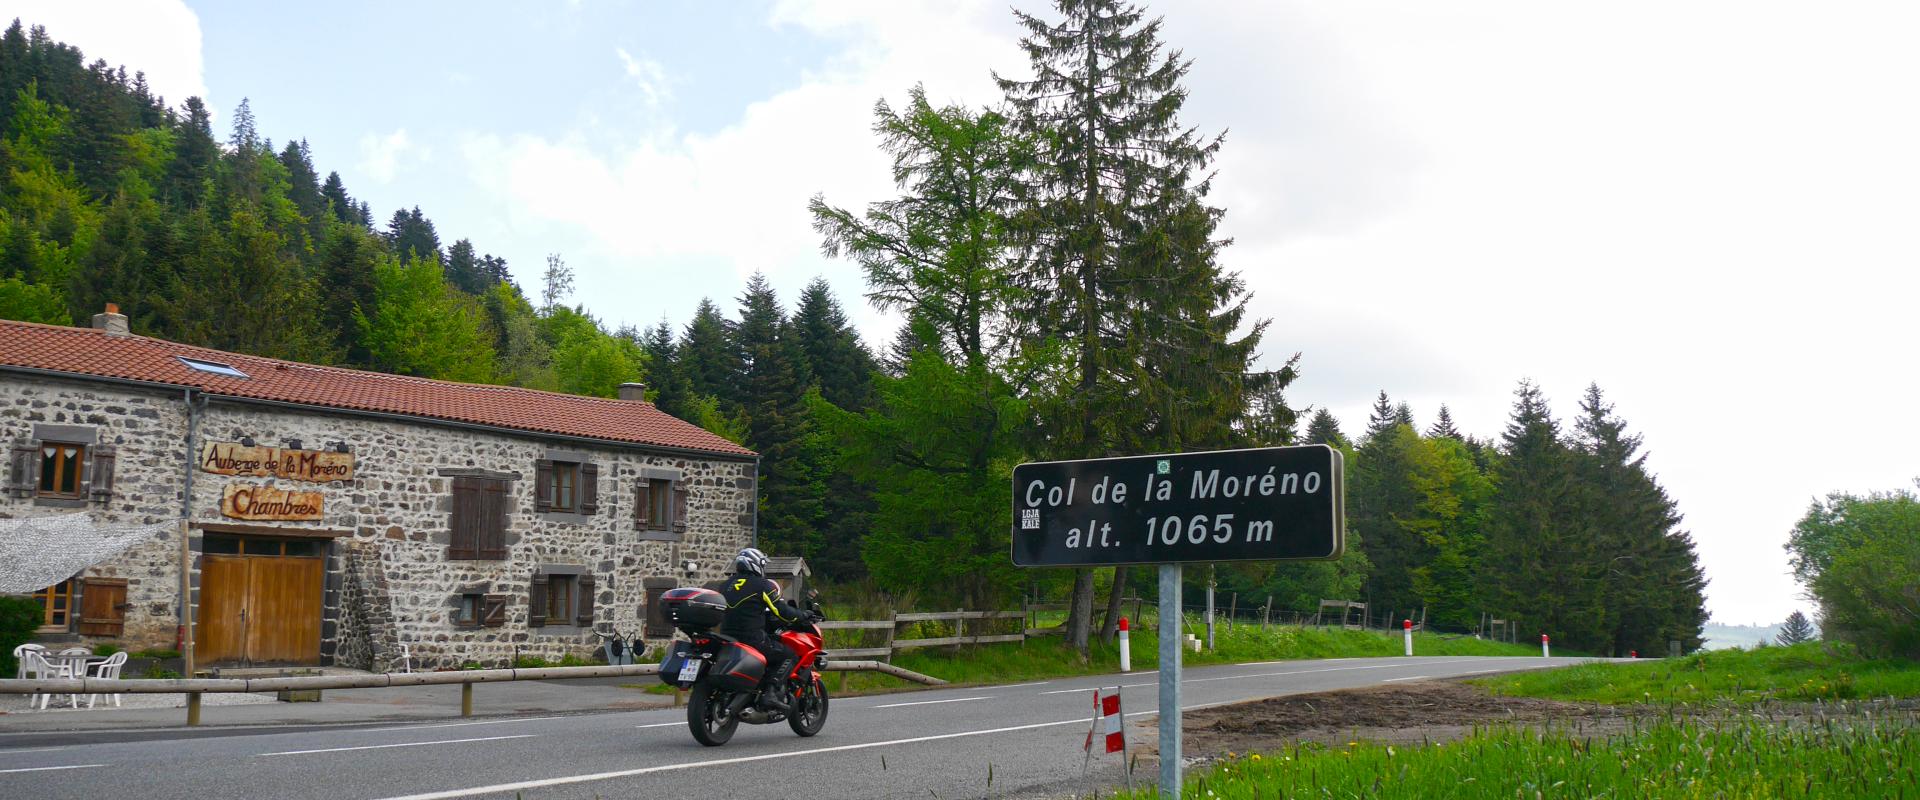 Moreno, Col de la - TS Auvergne F 5 2018 39.JPG